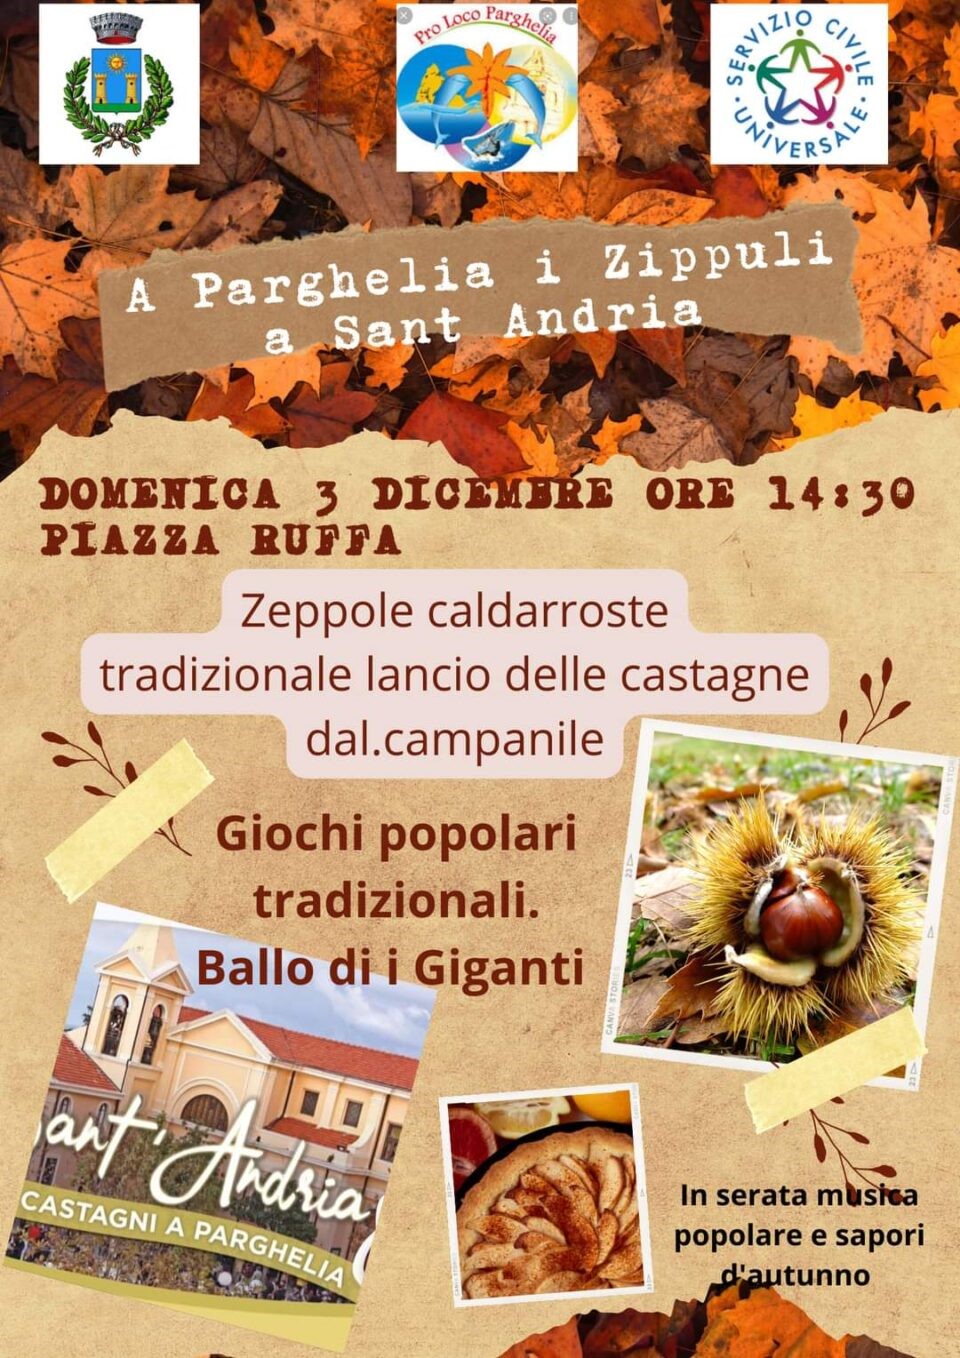 Si festeggia a Parghelia, in provincia di Vibo Valentia - Calabria, con i Zippuli a Sant'Andria, domenica 03 dicembre 2023.